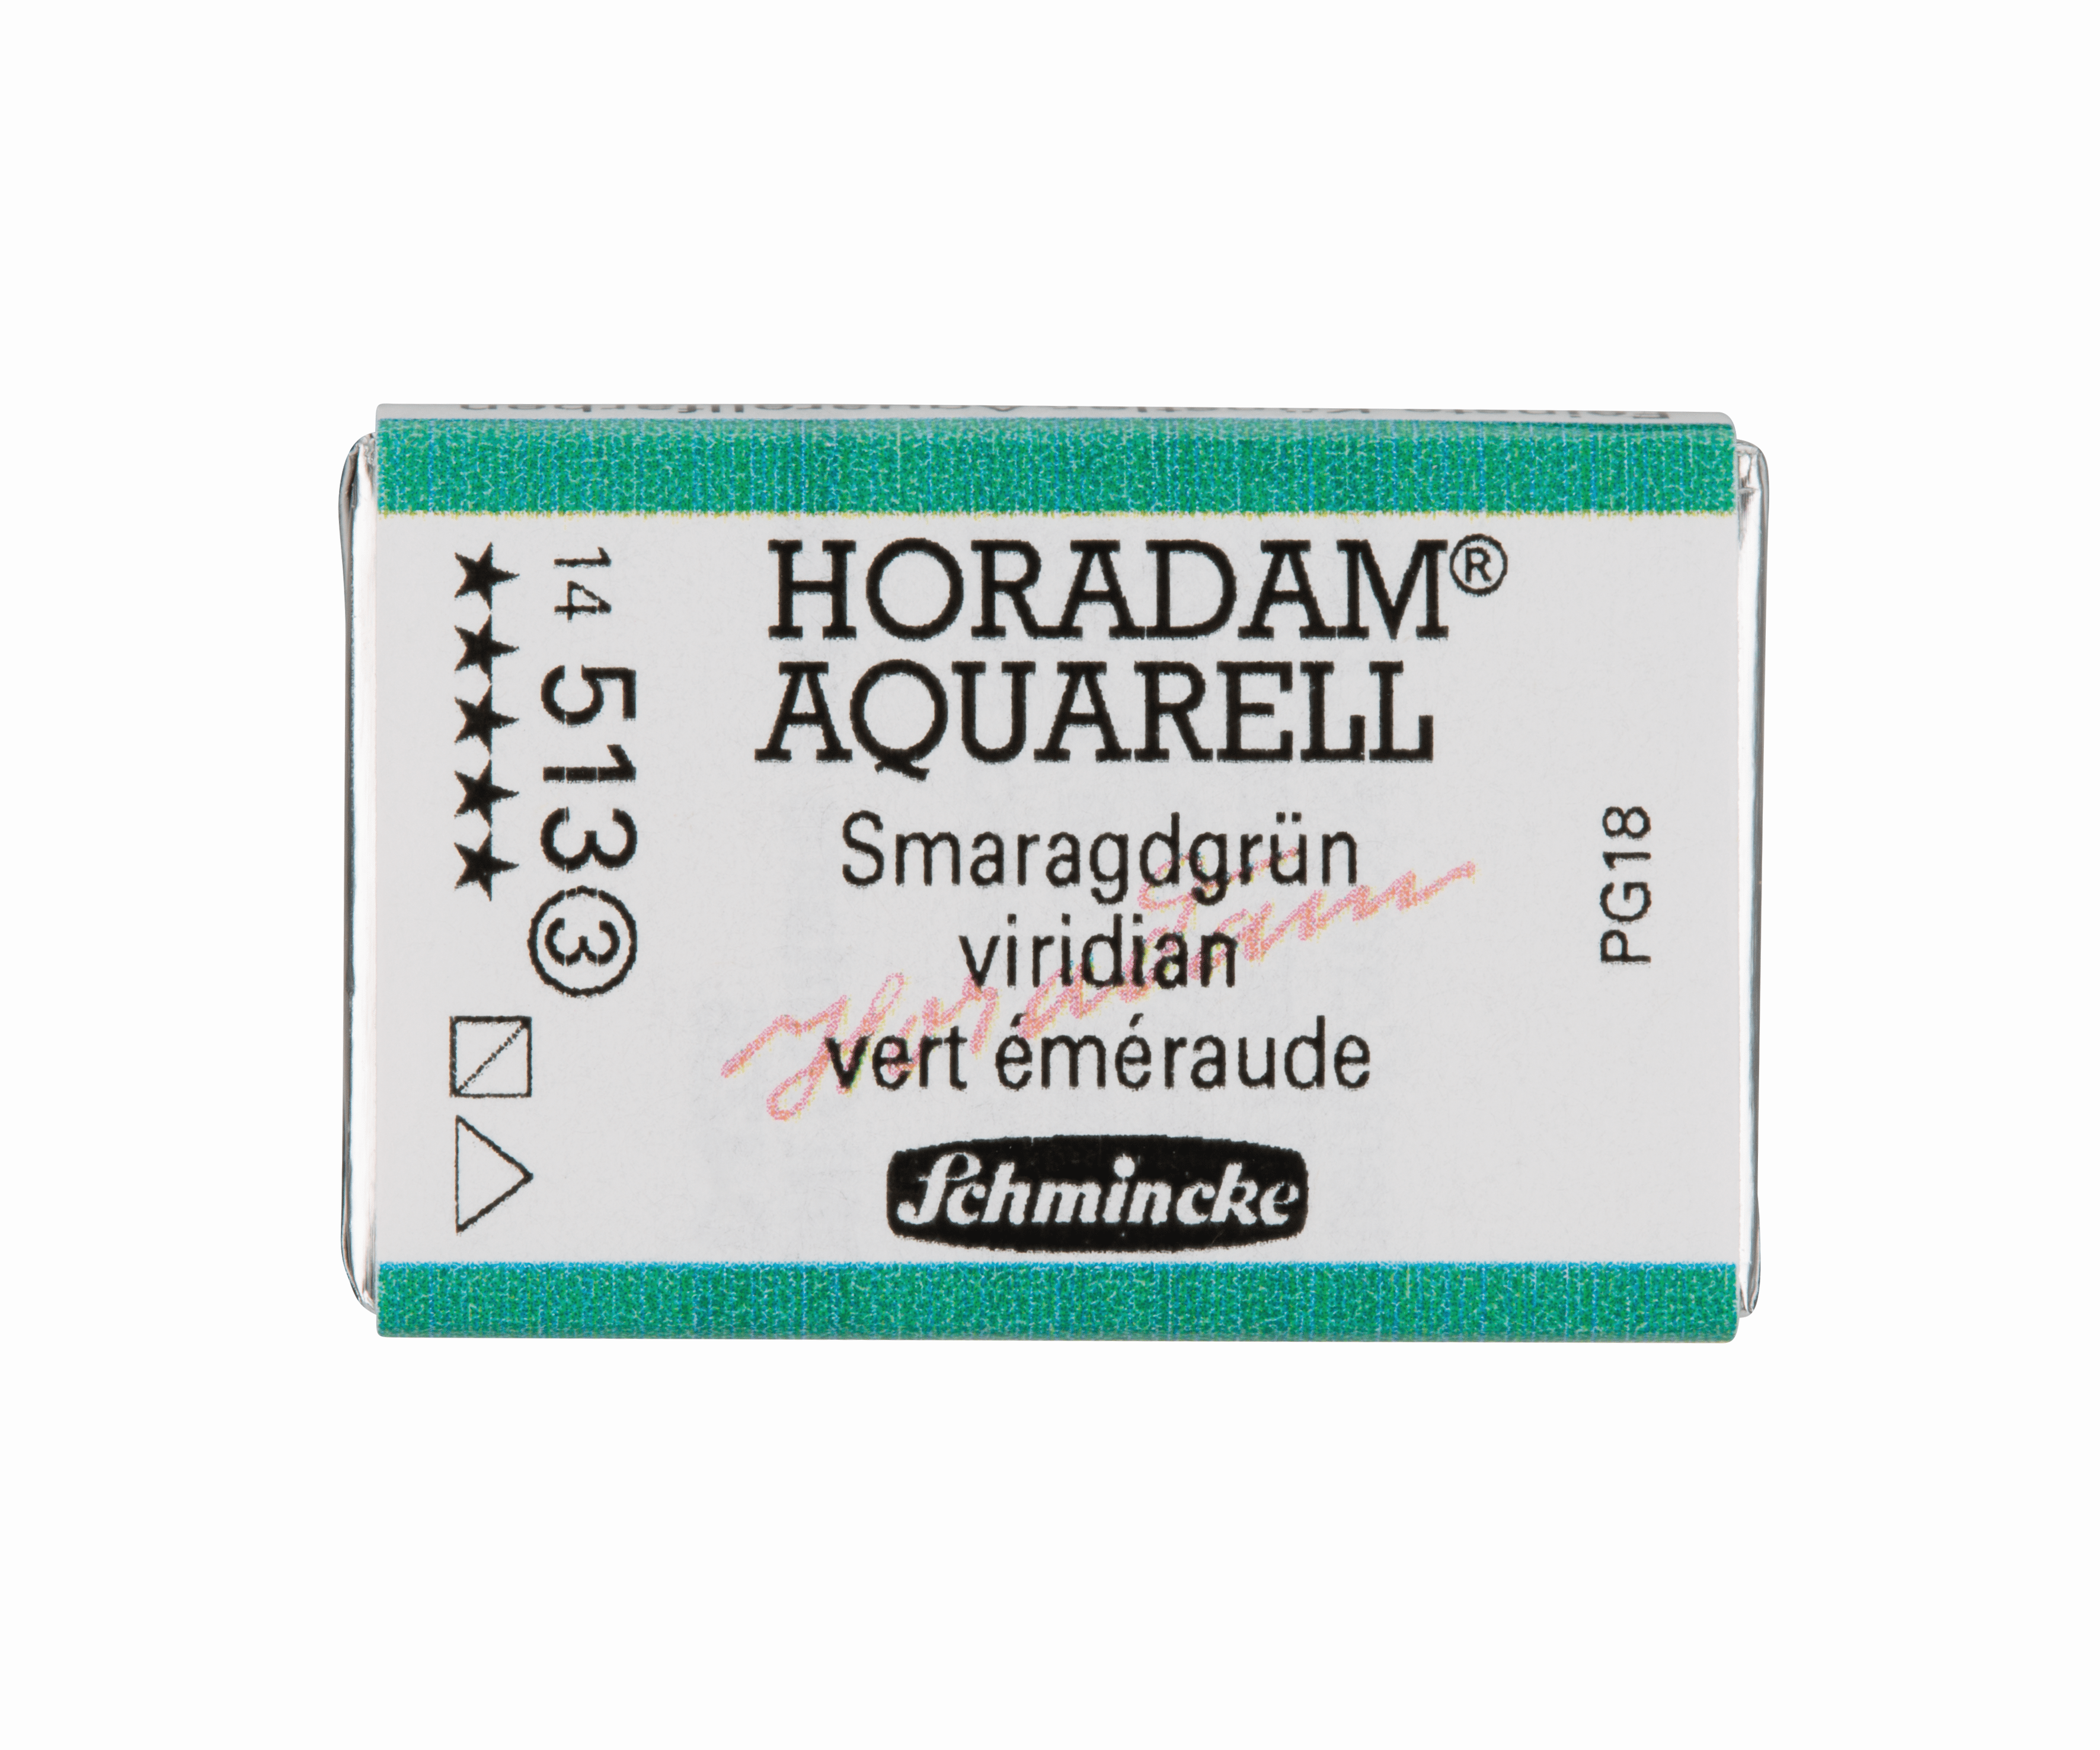 Schmincke Horadam Aquarell pans 1/1 pan Viridian